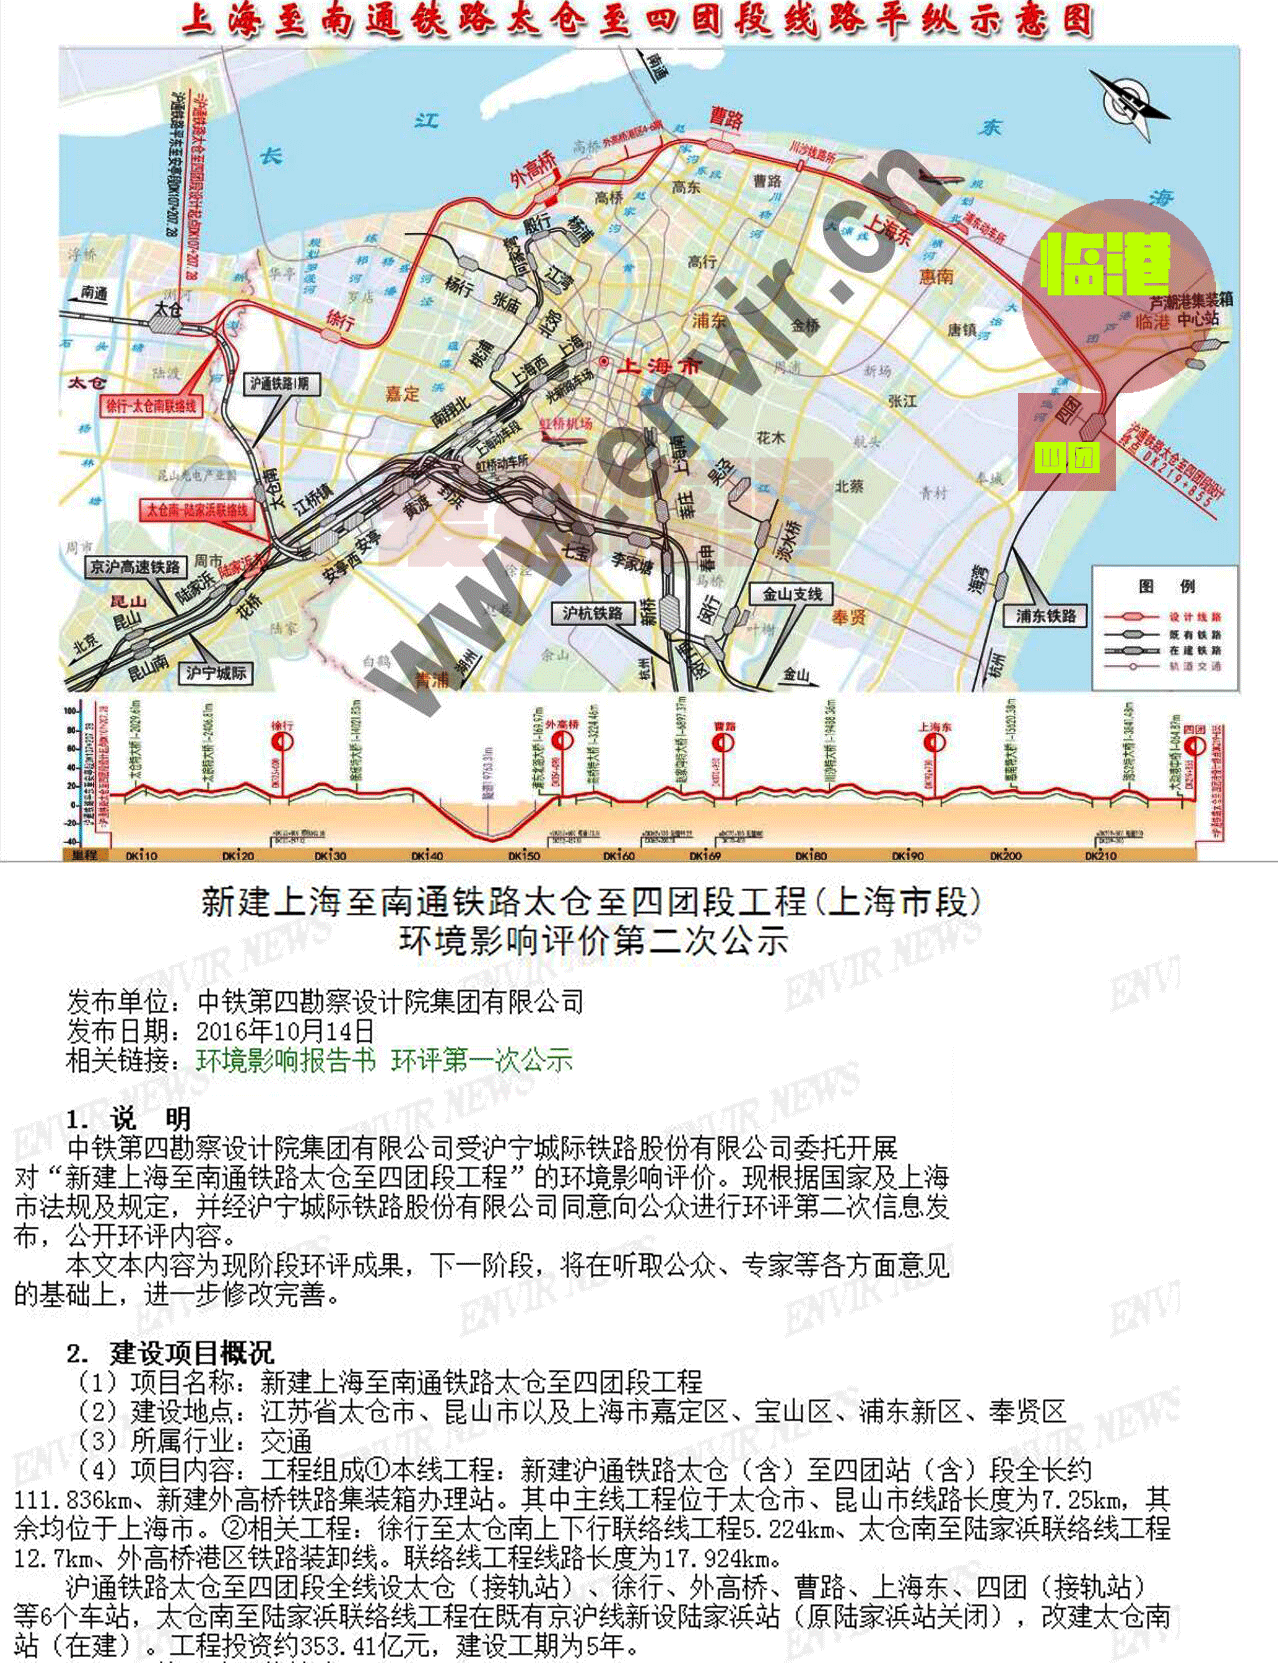 沪通铁路 跨海大桥 洋山深水港=上海新未来?